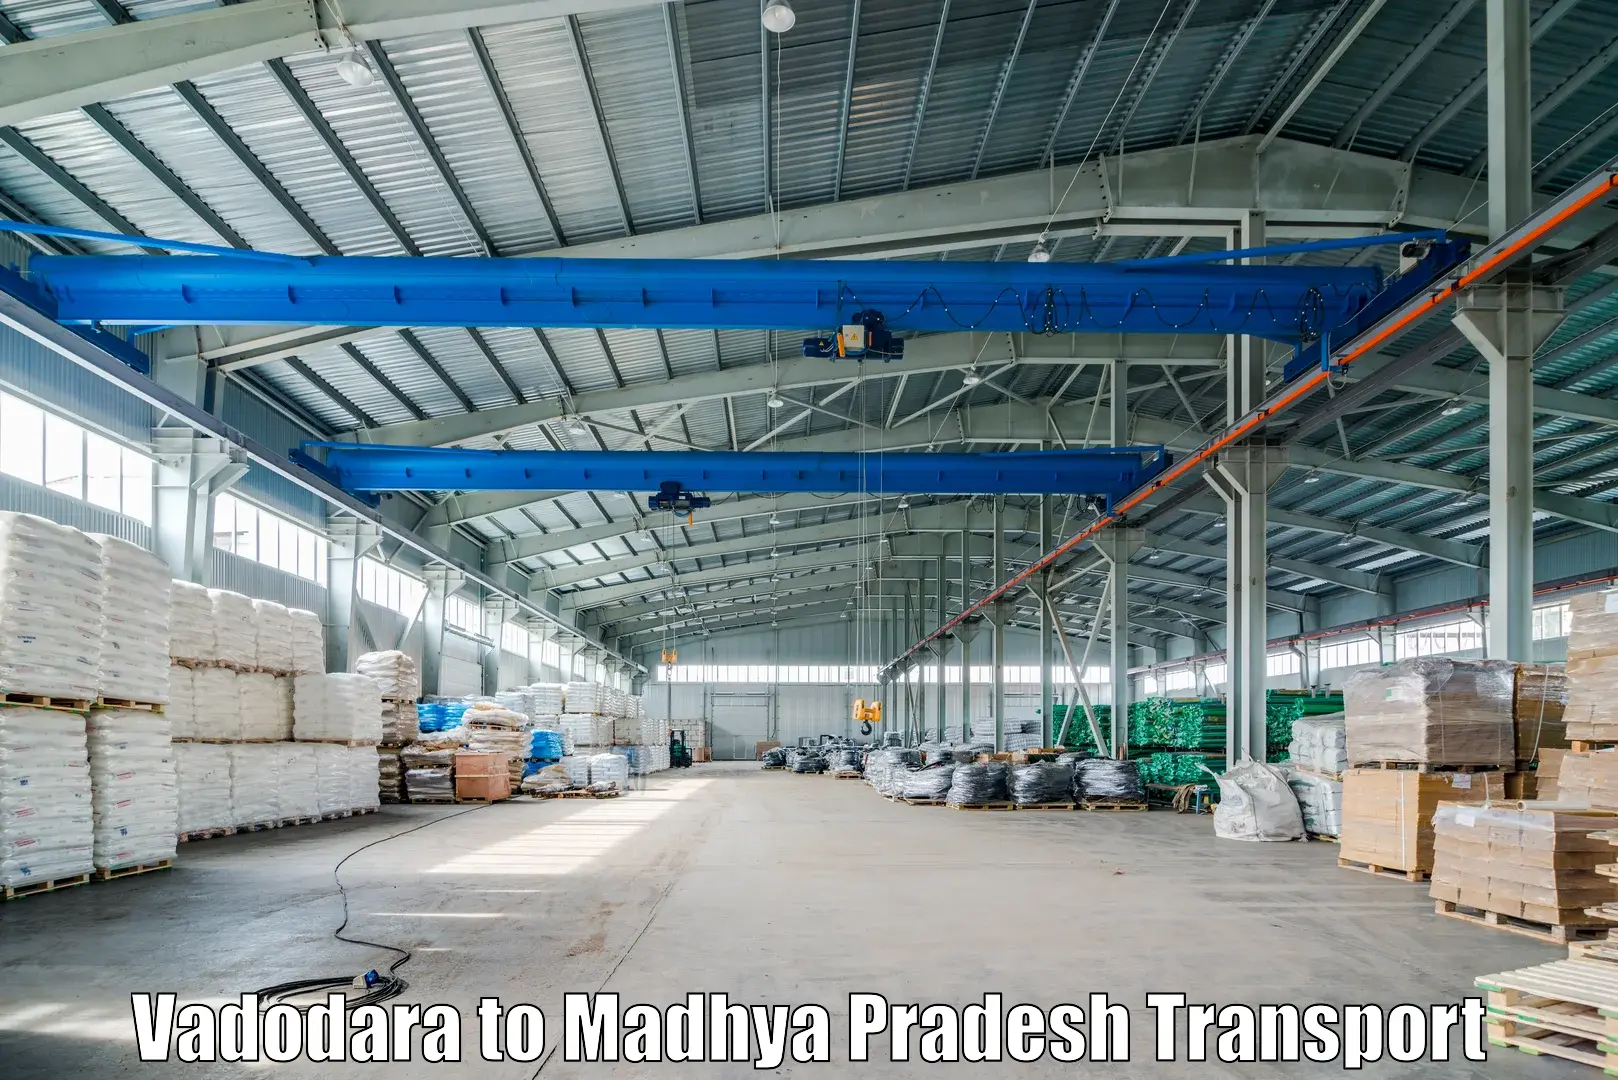 Furniture transport service Vadodara to Madhya Pradesh